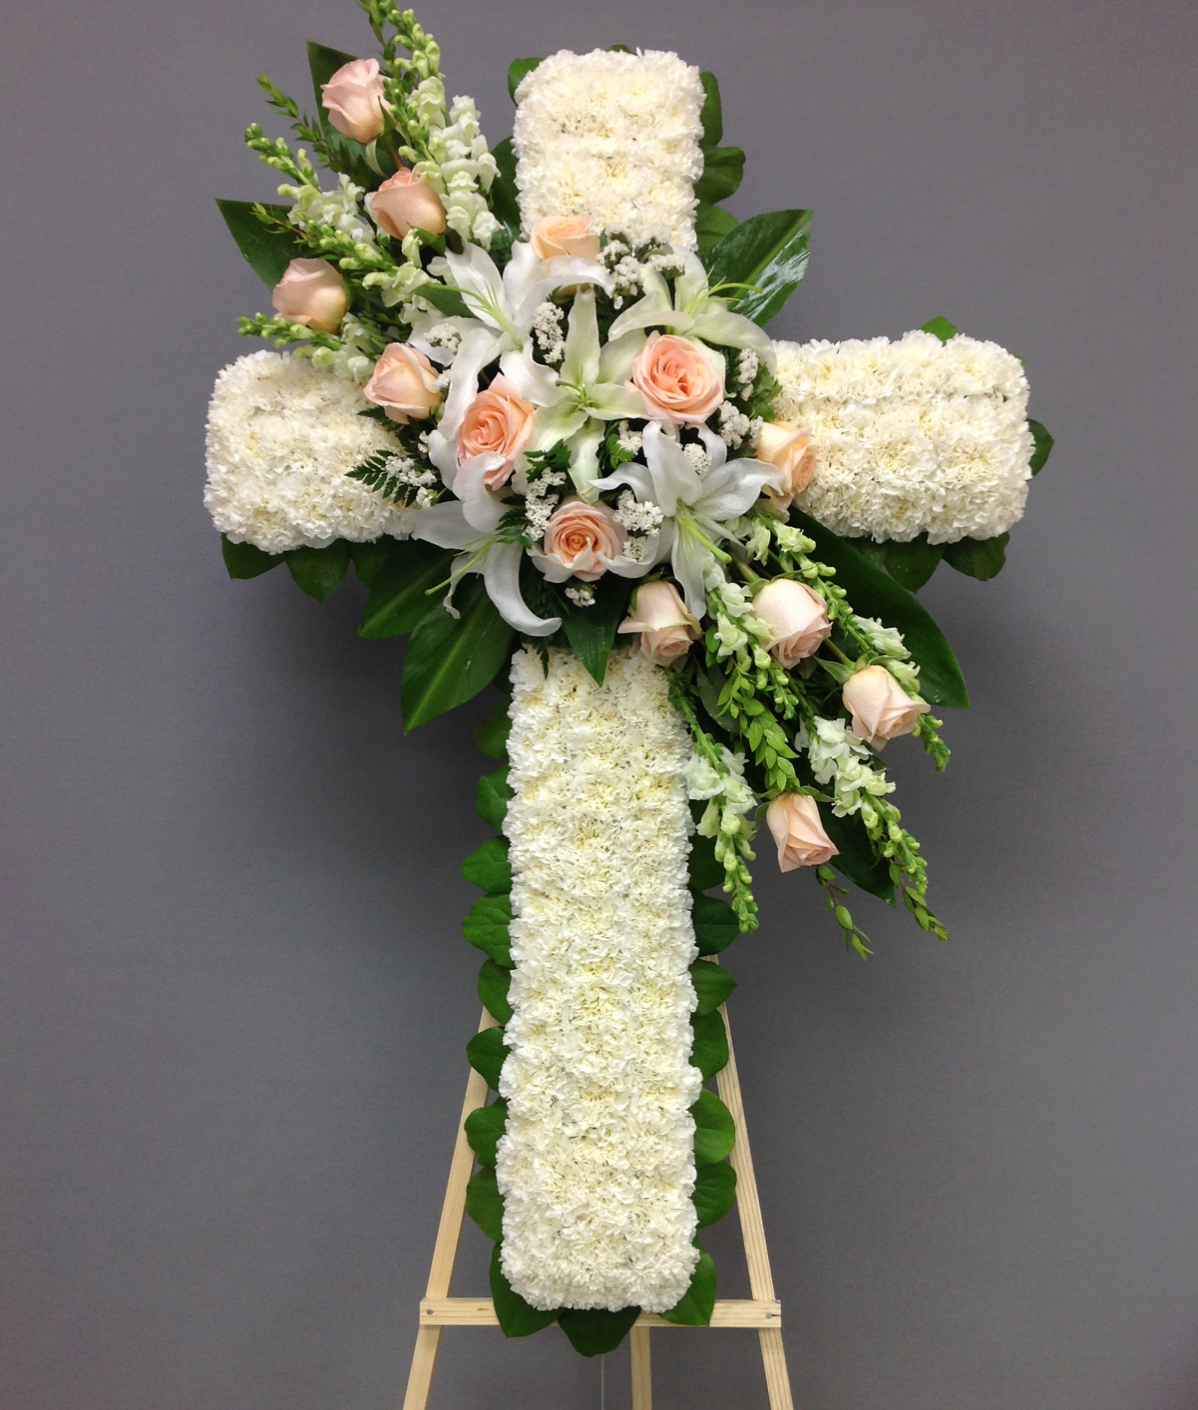 Funeral cross